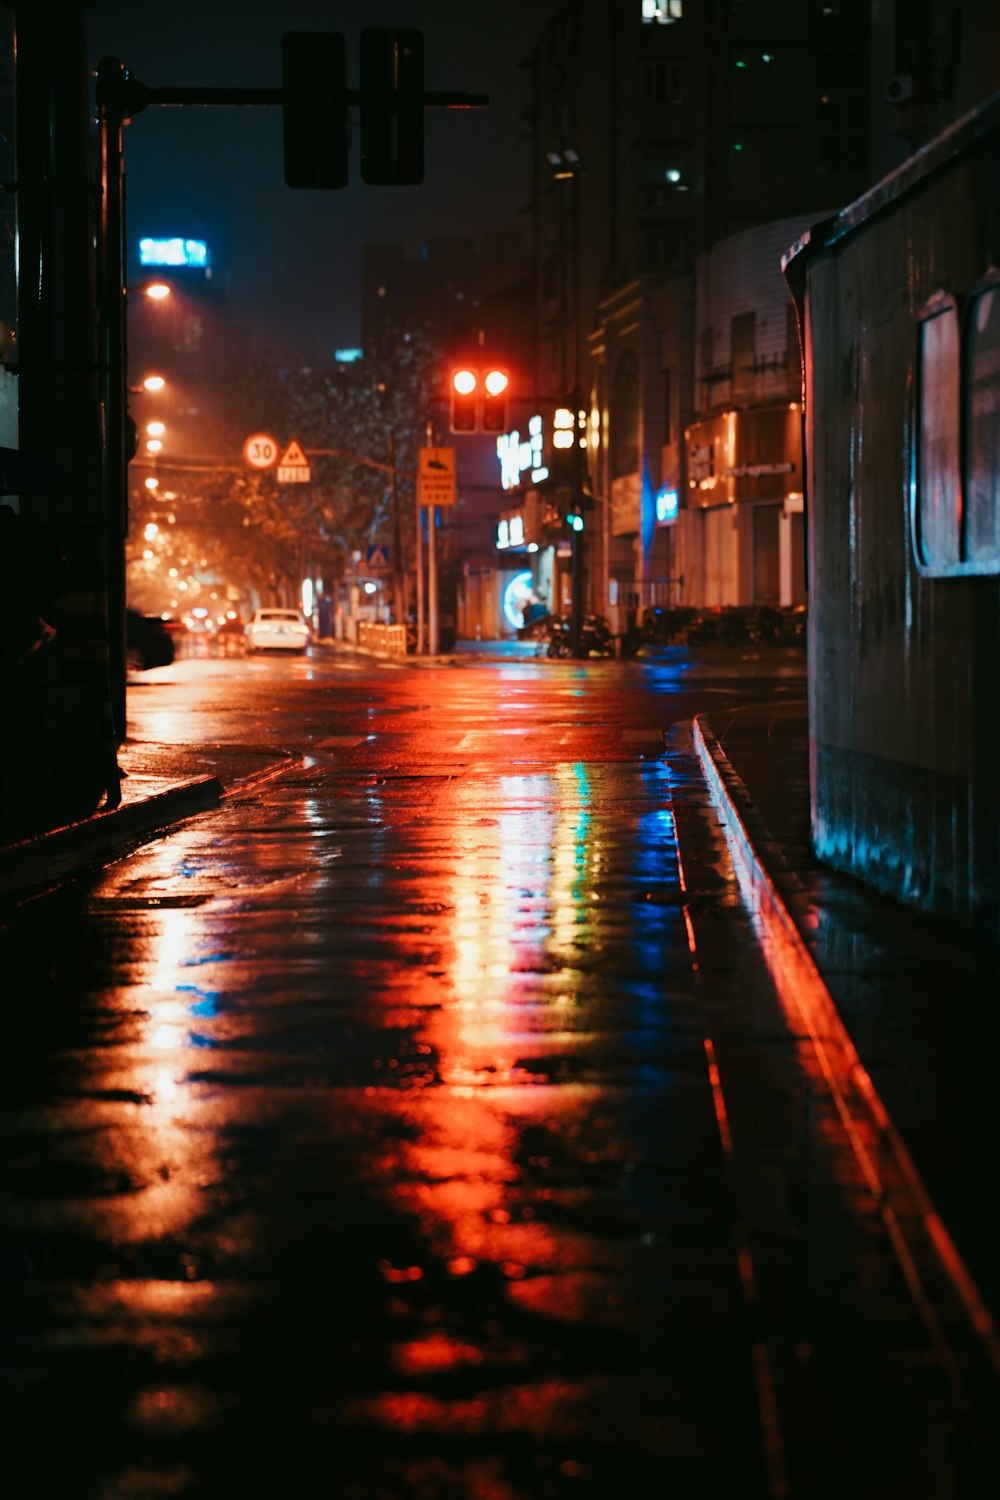 lumière rouge et jaune dans la rue pendant la nuit